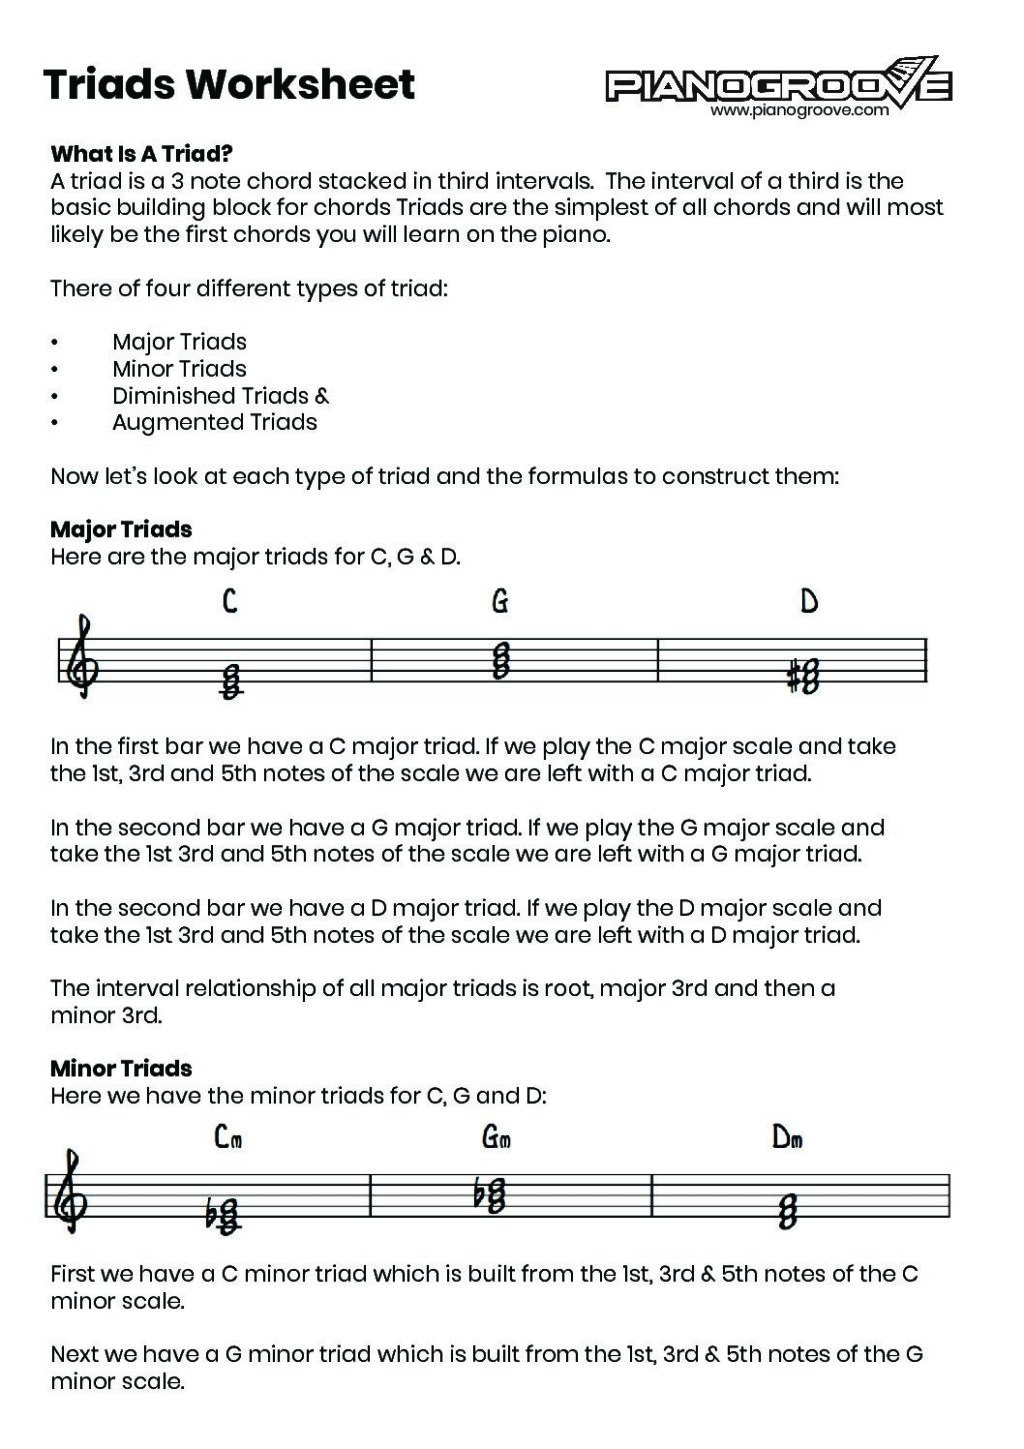 triads-lesson-supplement-pianogroove